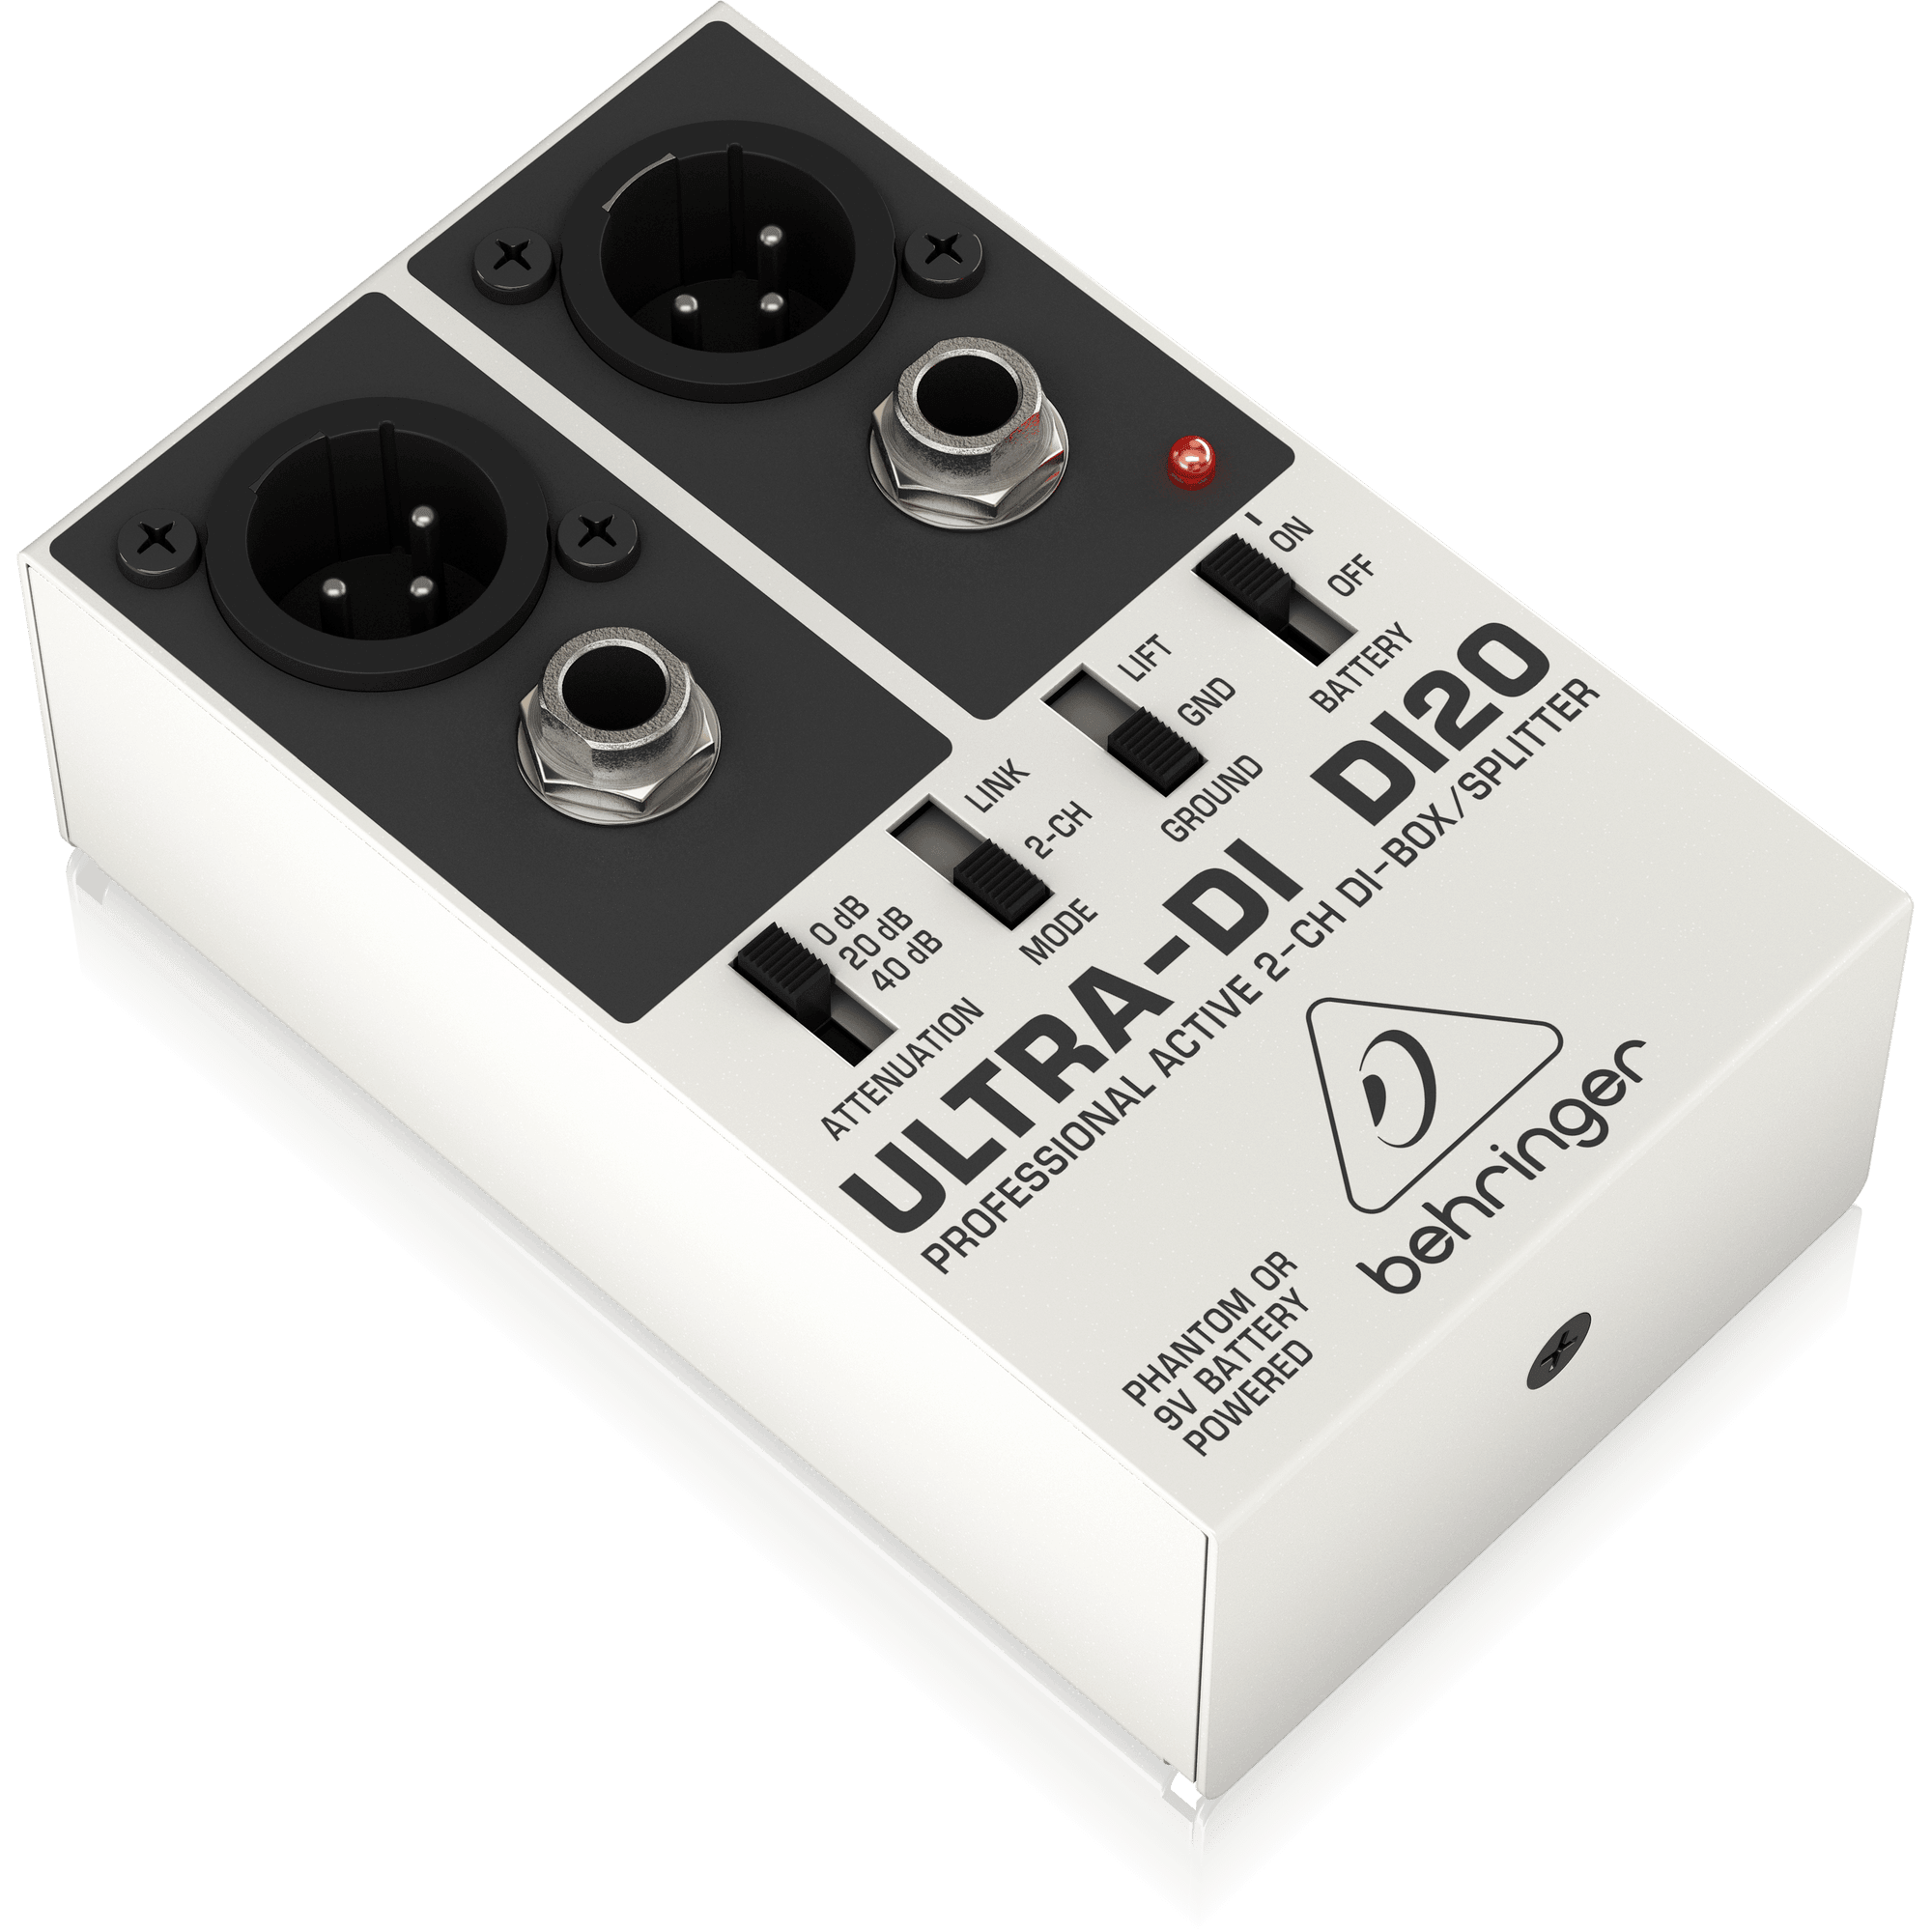 Ultra-DI DI20 DI Box - Live & Recording - Accessories by Behringer at Muso's Stuff